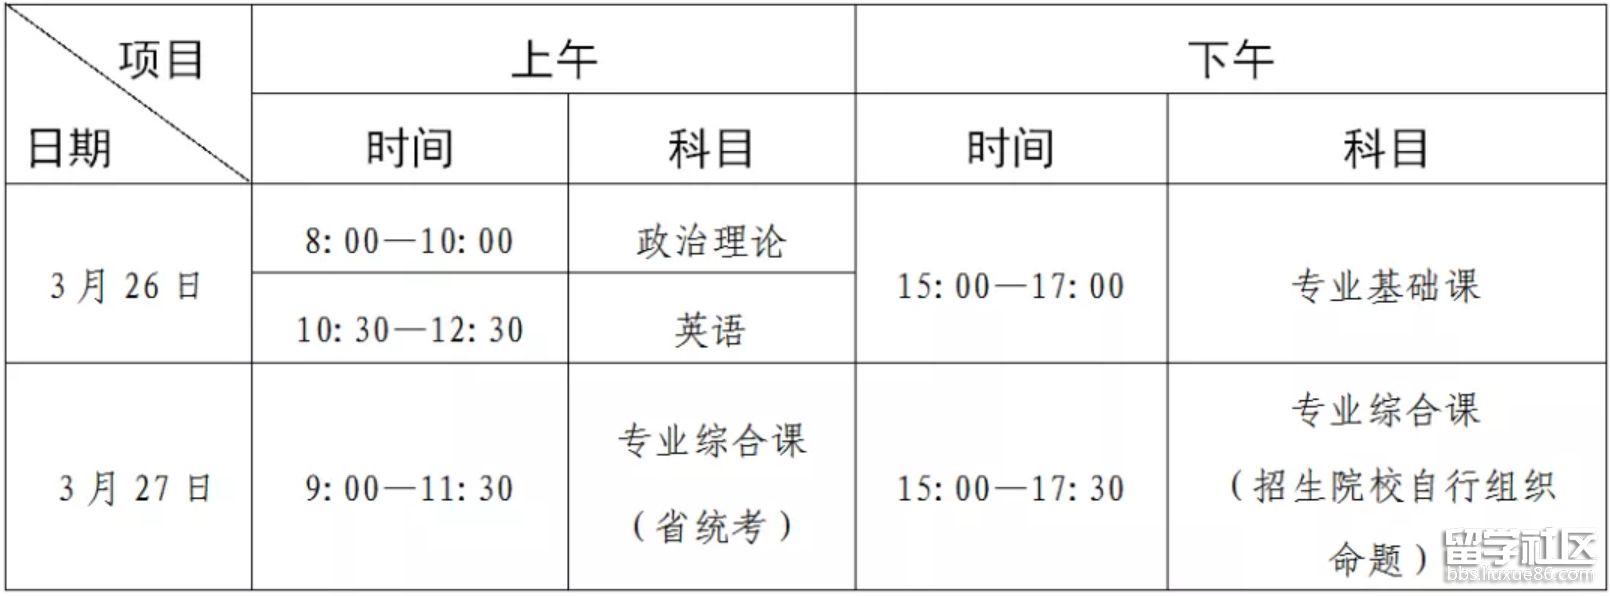 广东省2022年普通专升本招生考试时间